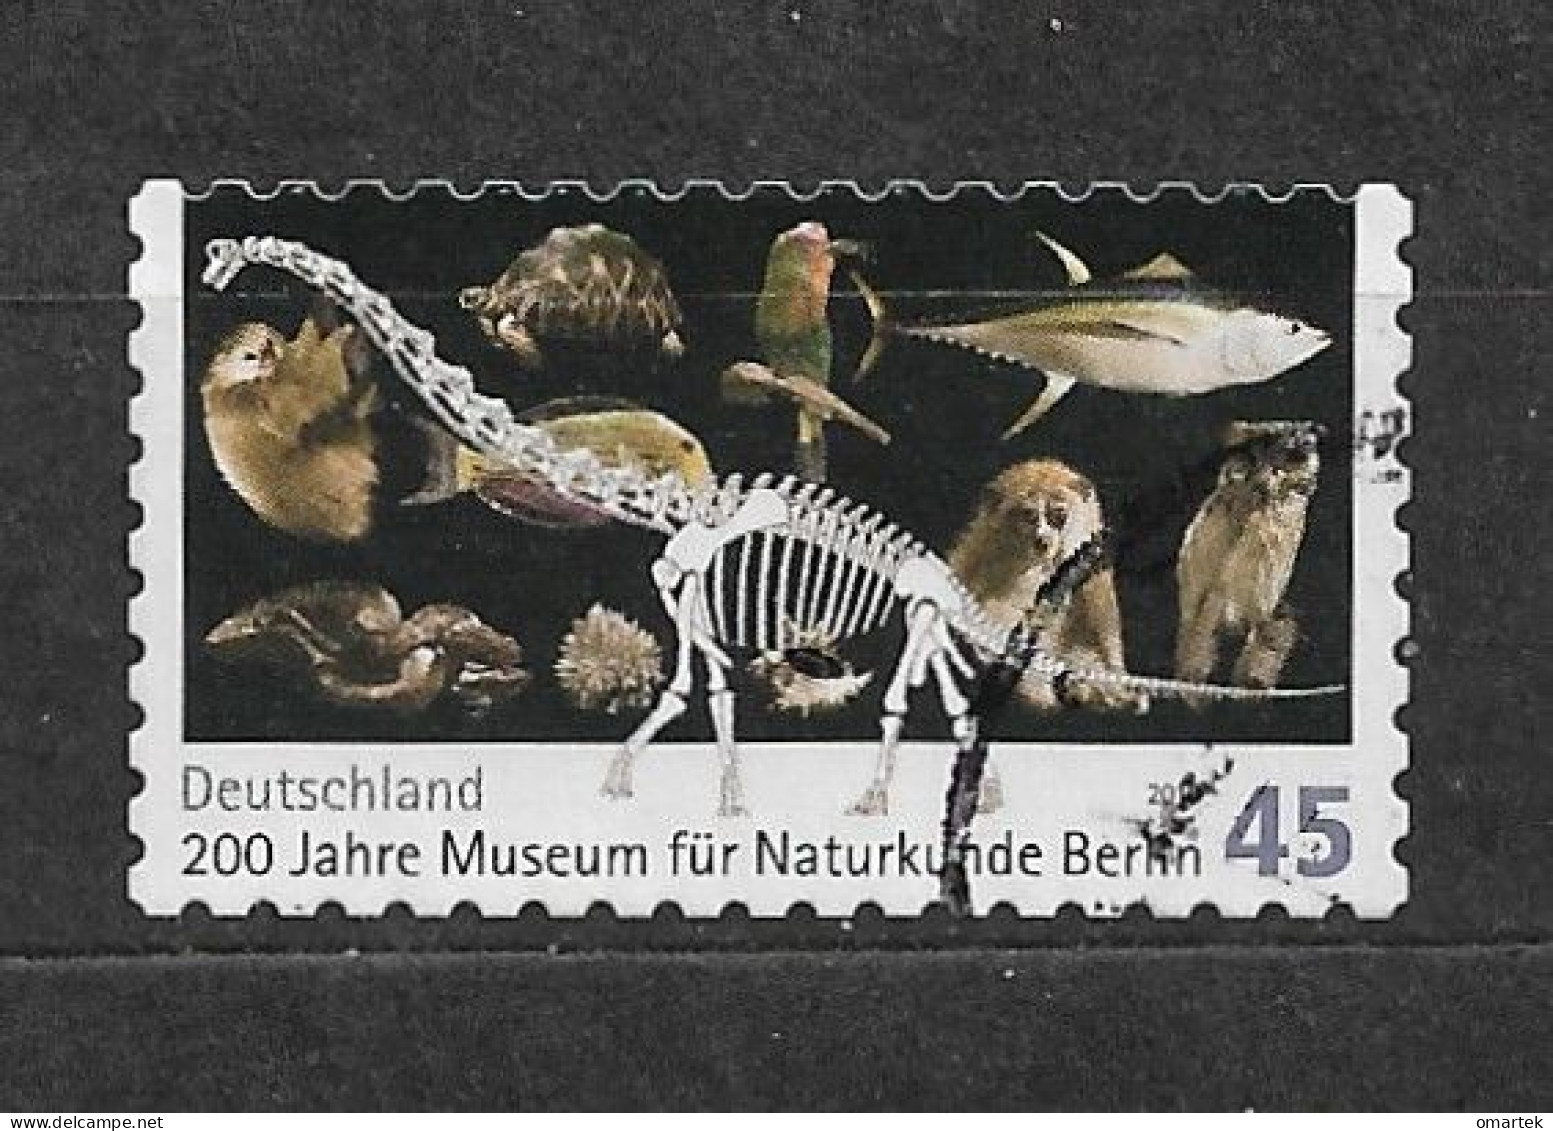 Deutschland Germany BRD 2010 ⊙ Mi 2780 Natural History Museum, Berlin. C1 - Gebraucht